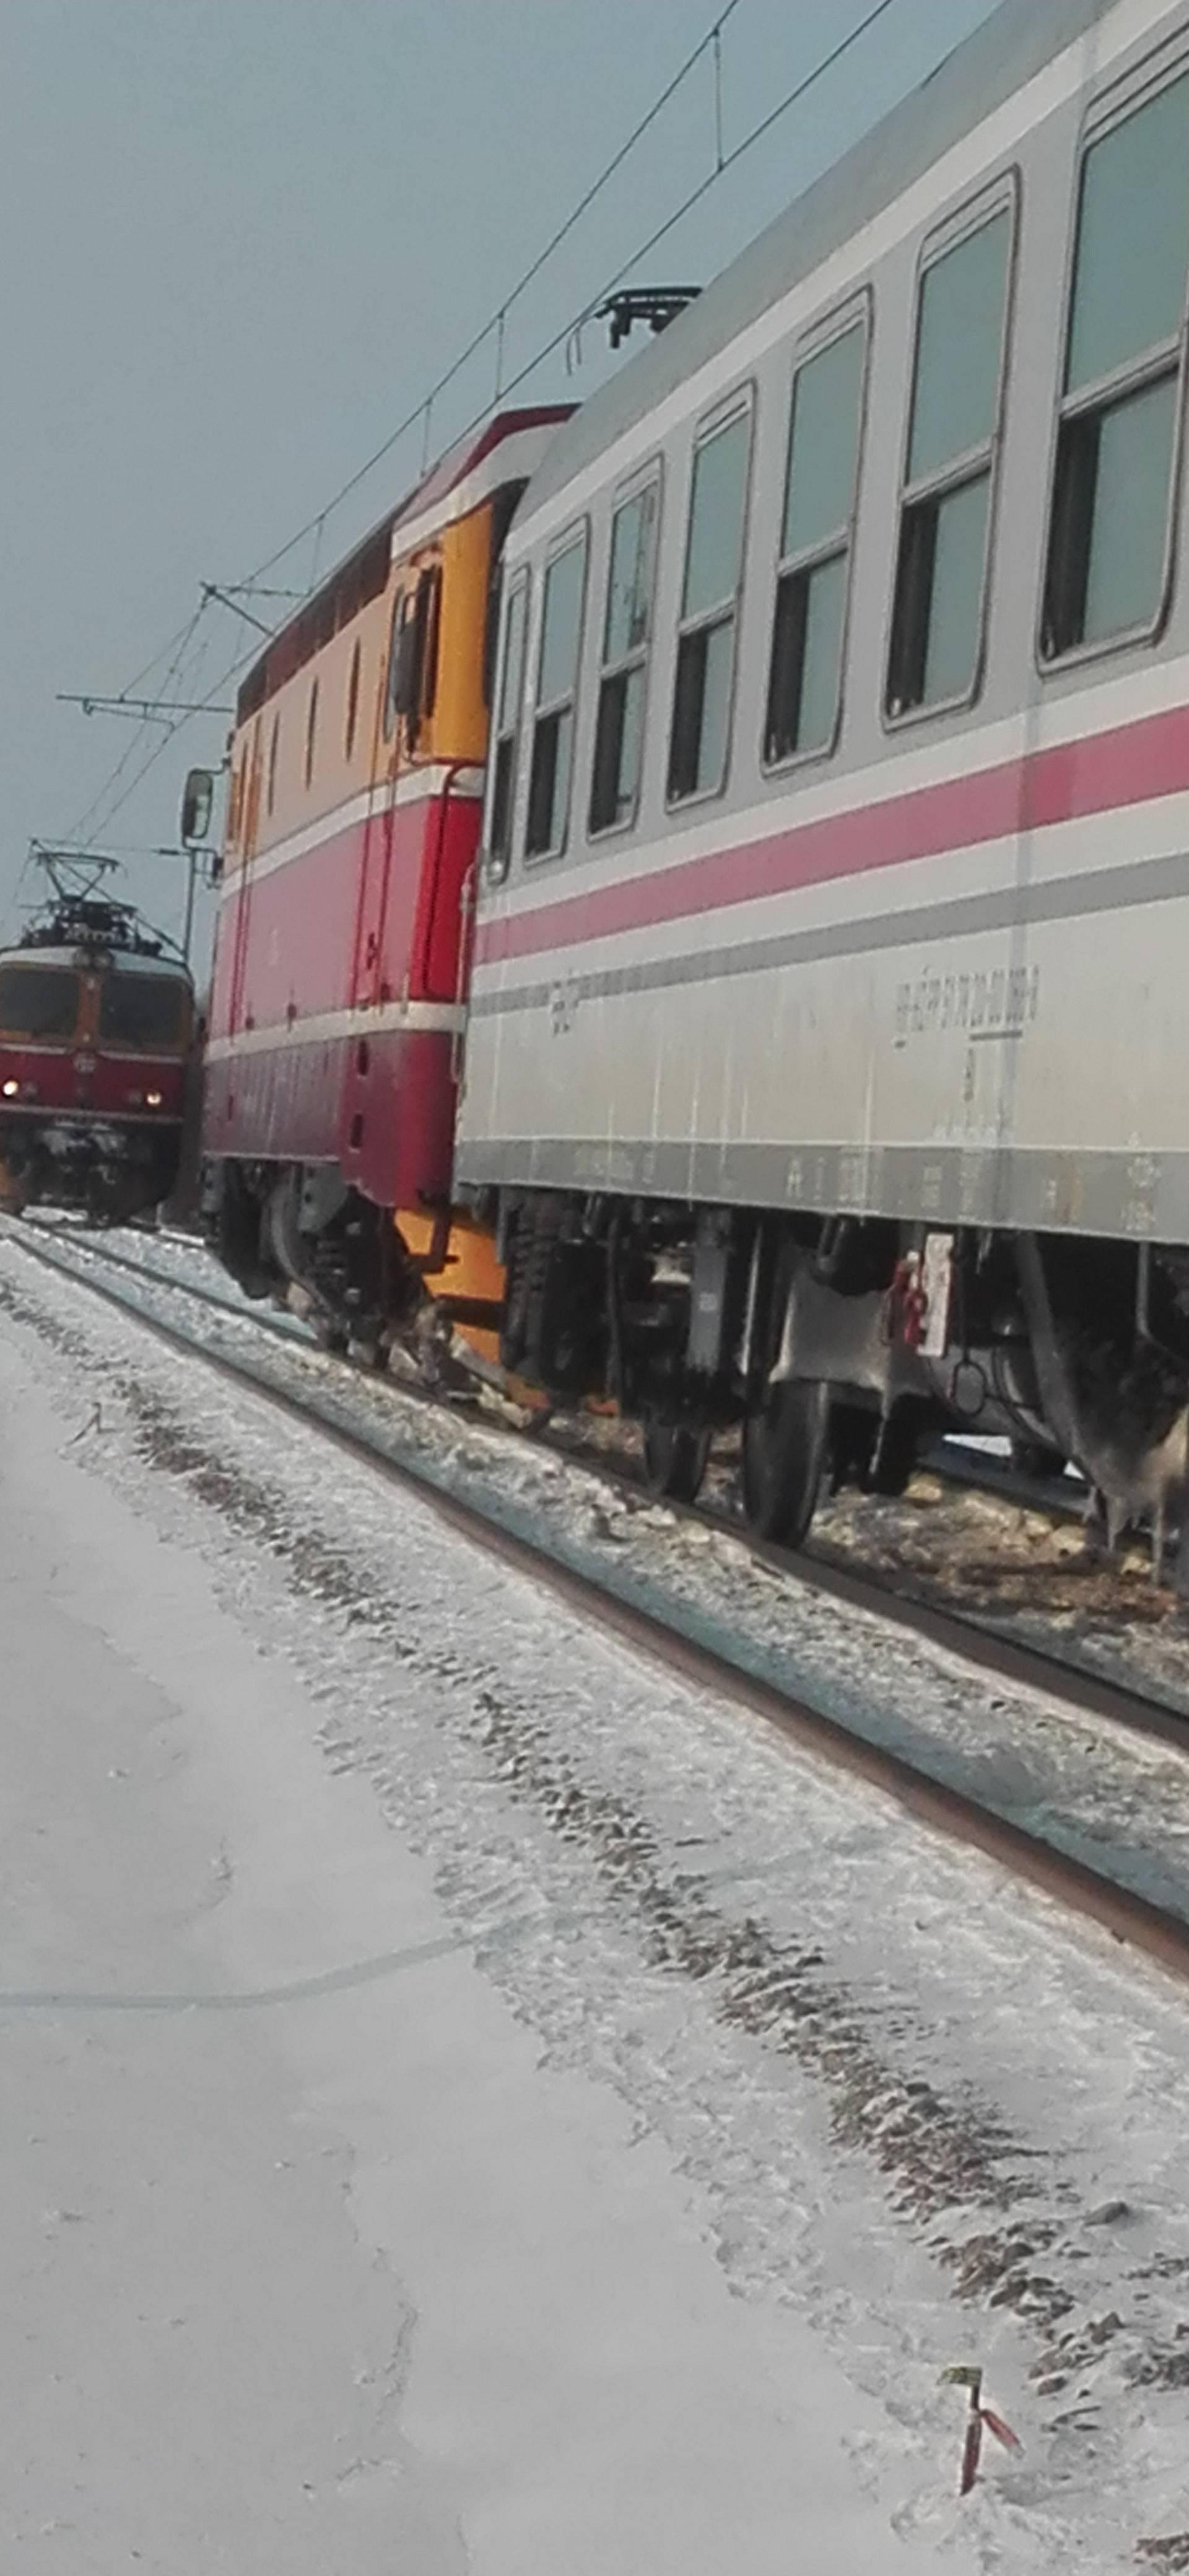 Vlak stao kod Vrbovca: 'Vani je bilo -12, a grijanje nije radilo!'